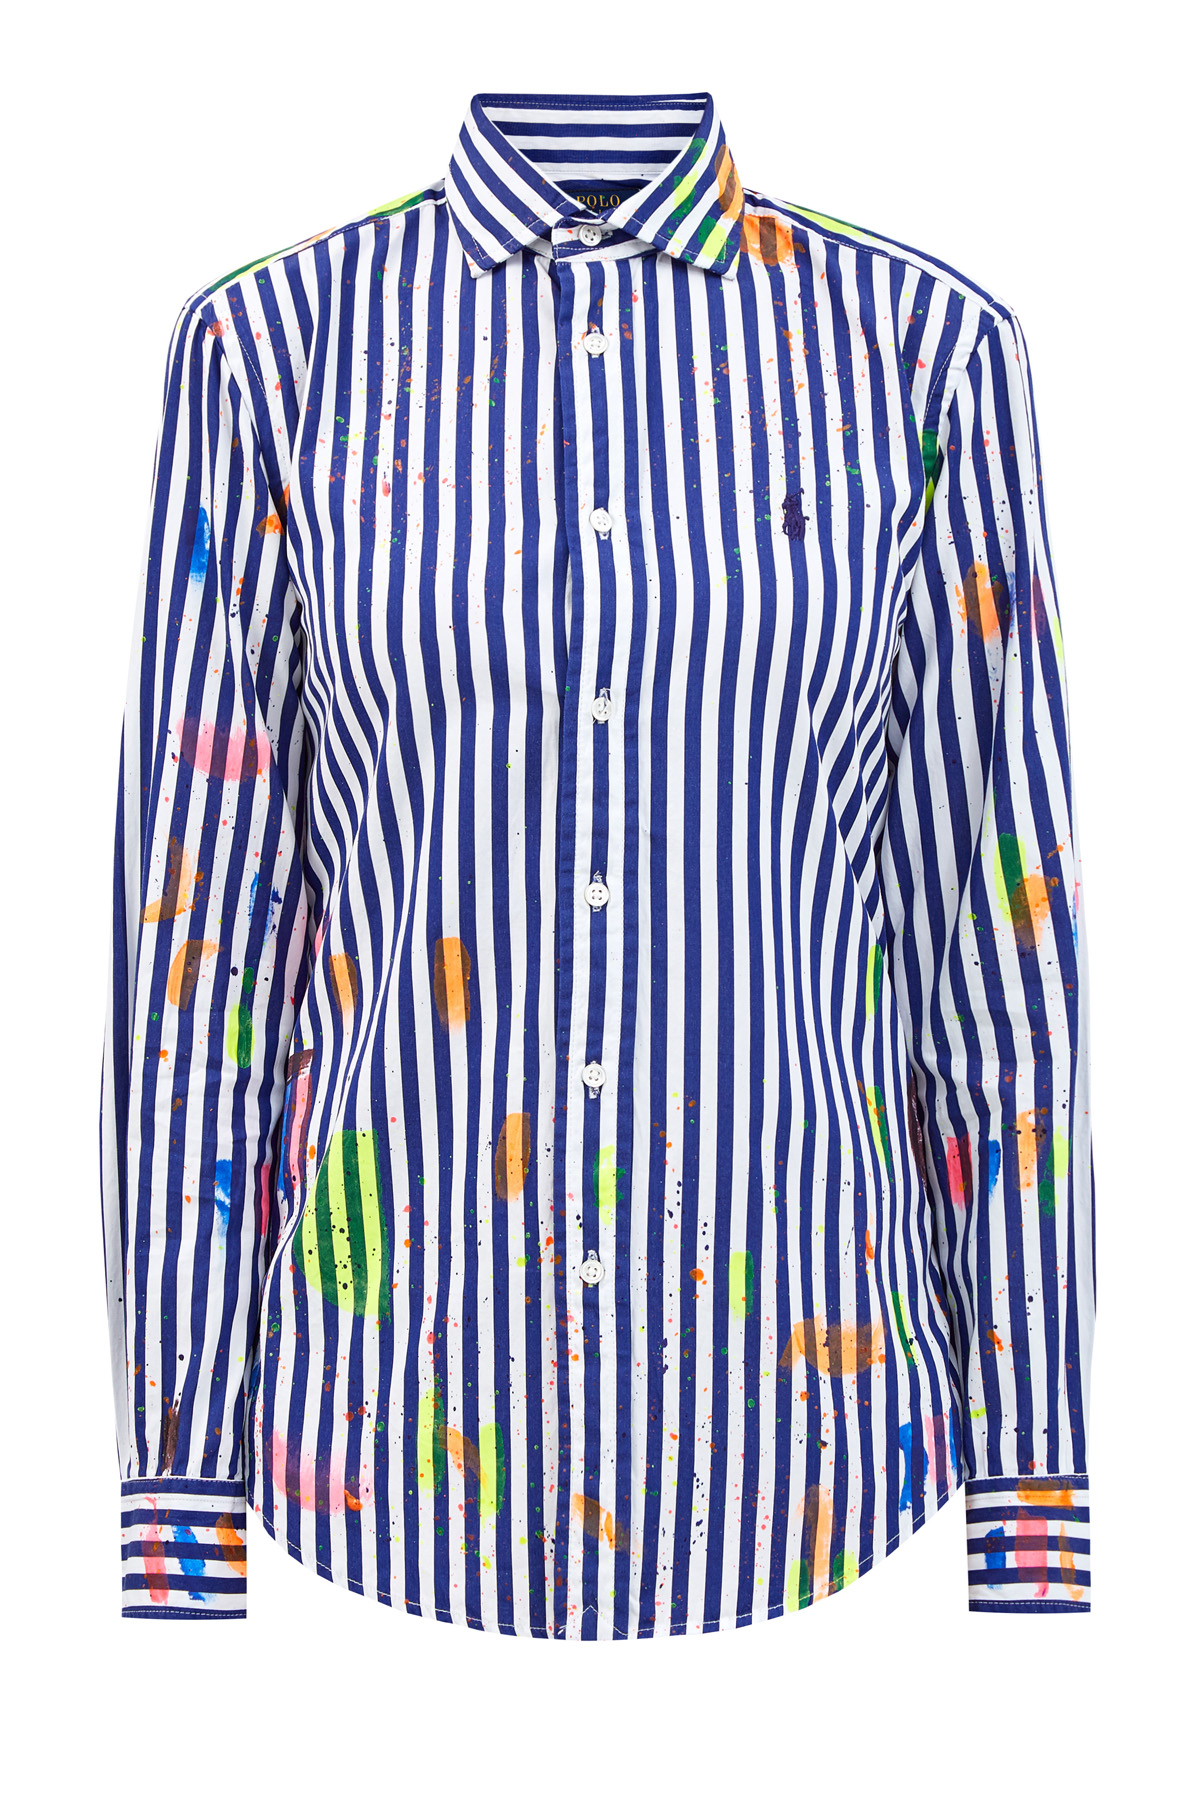 Рубашка из хлопка с нанесенным вручную фактурным принтом POLO RALPH LAUREN, цвет синий, размер M;L;XL